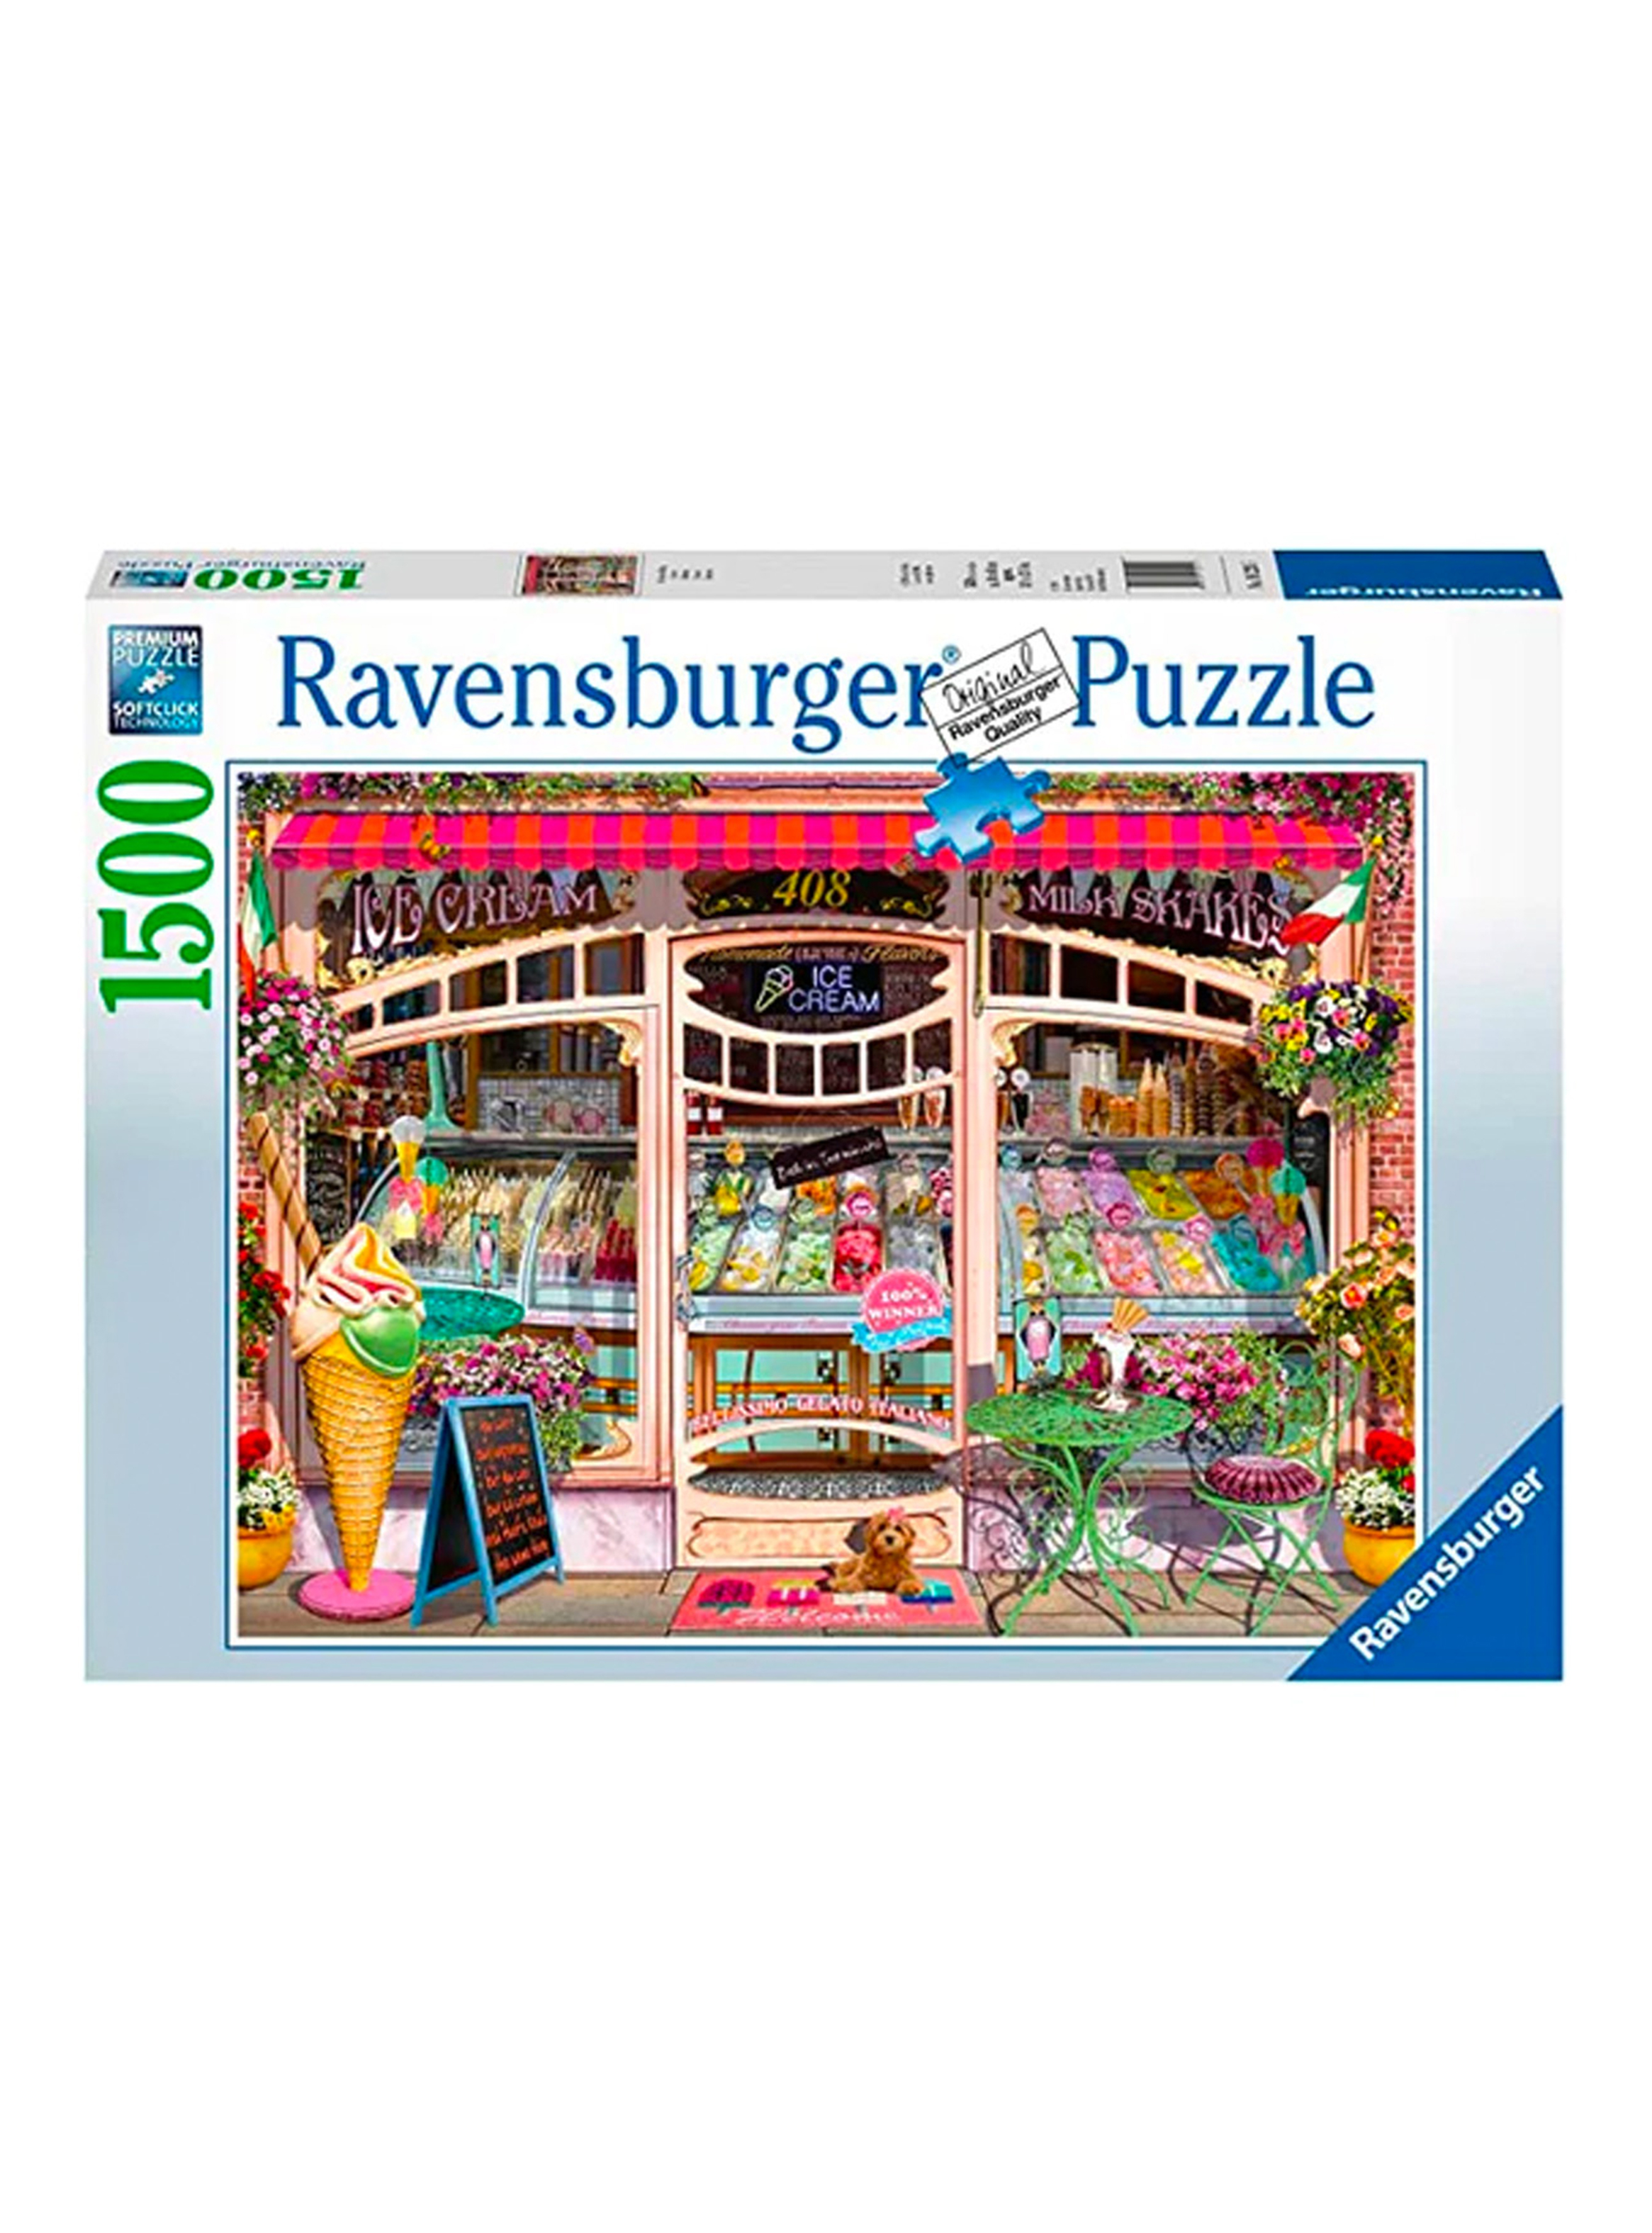 Ravensburger Puzzle Heladería 1500 piezas Caramba